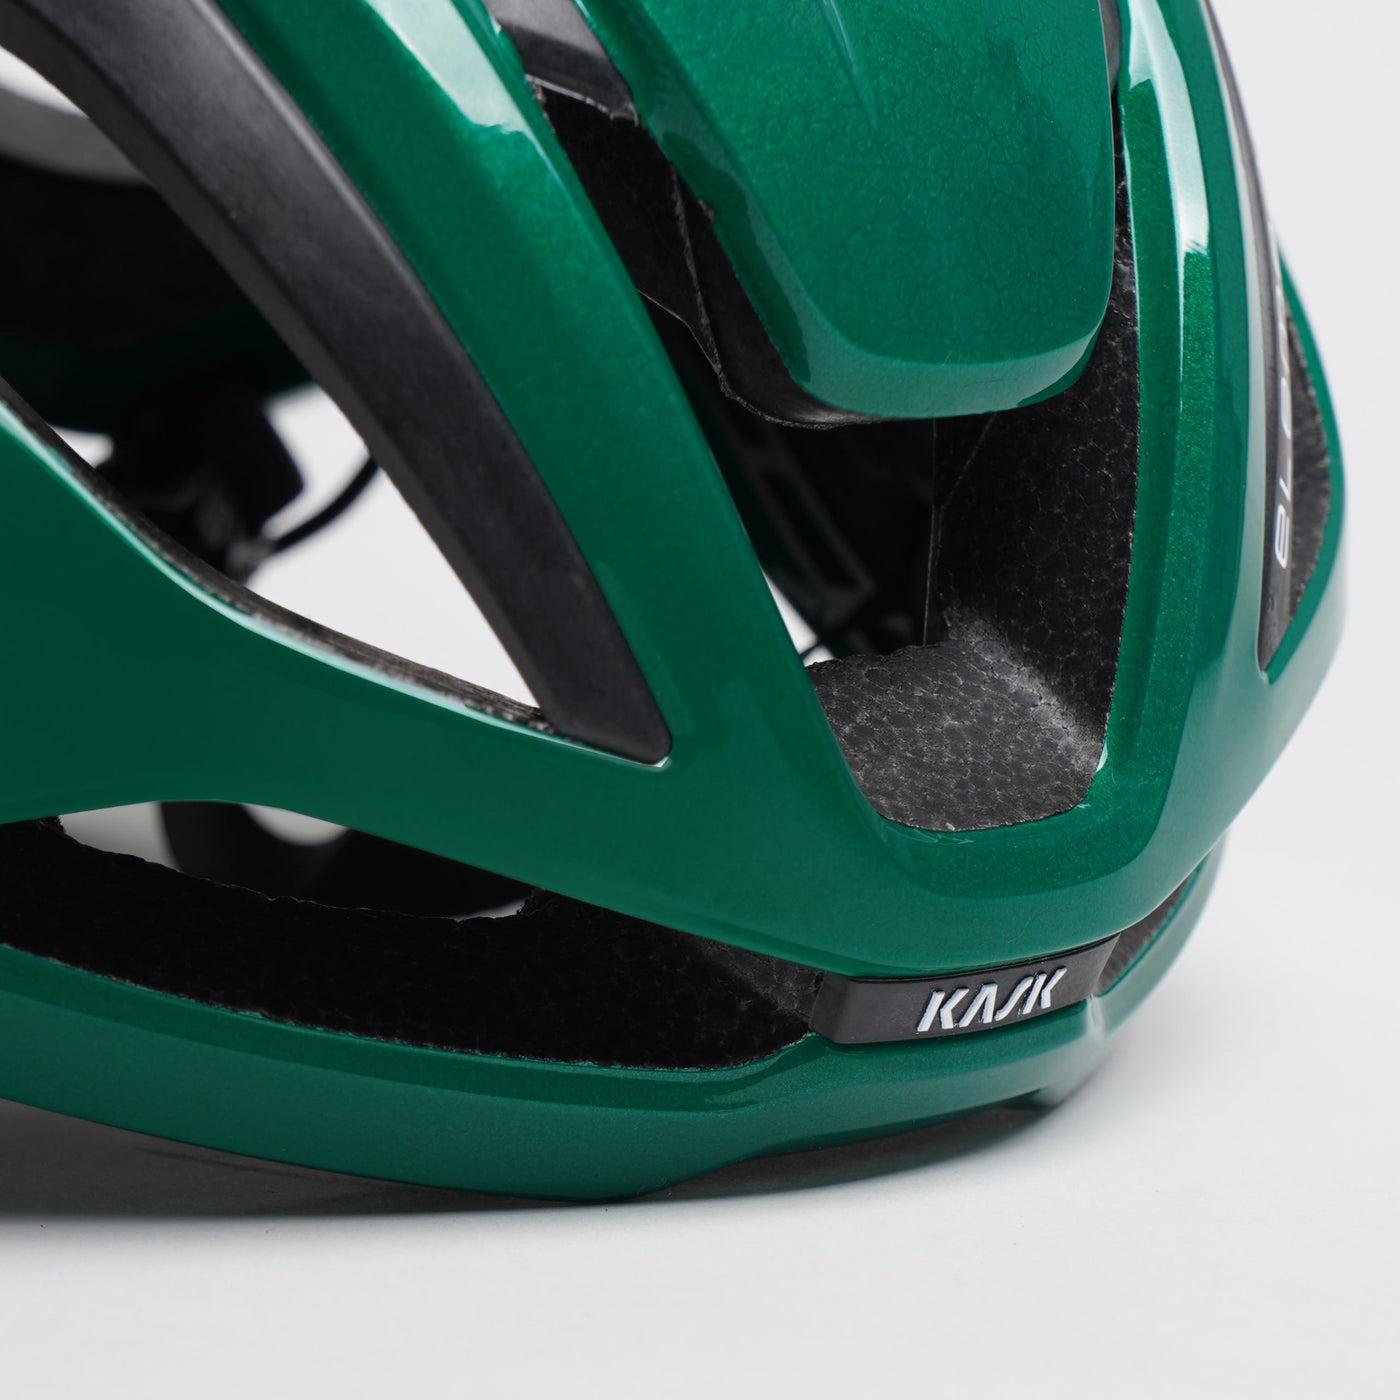 Nærbillede af Kask Elemento cykelhjelm i farven Beetle Green.